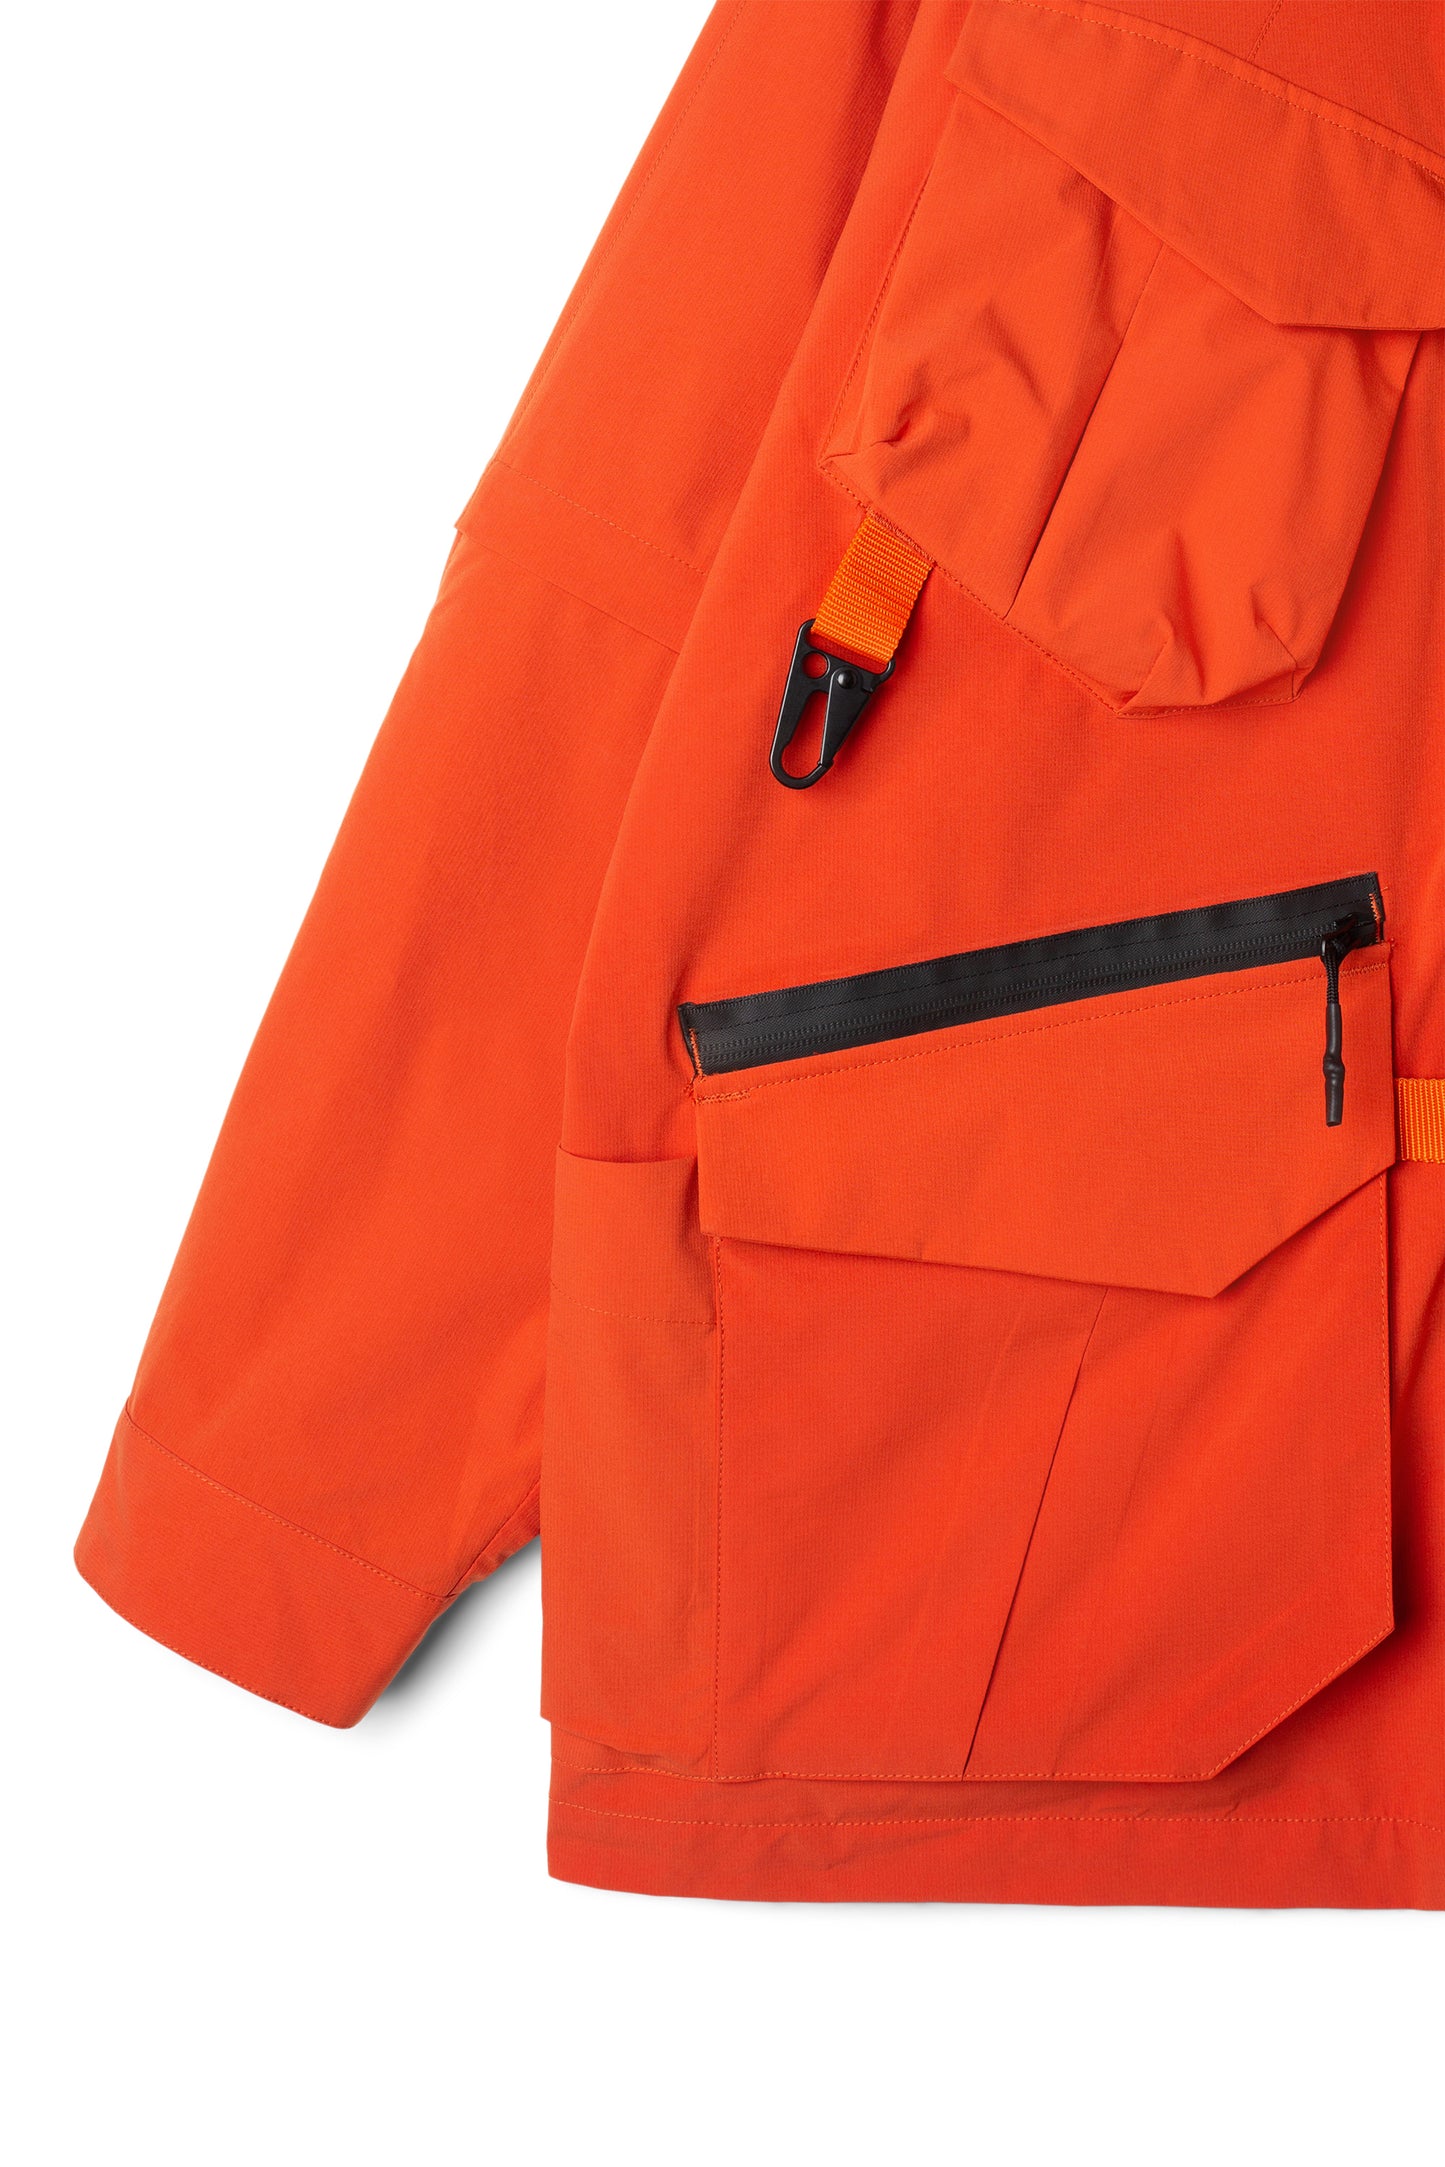 Extra Mile Infinity Jacket (Orange)